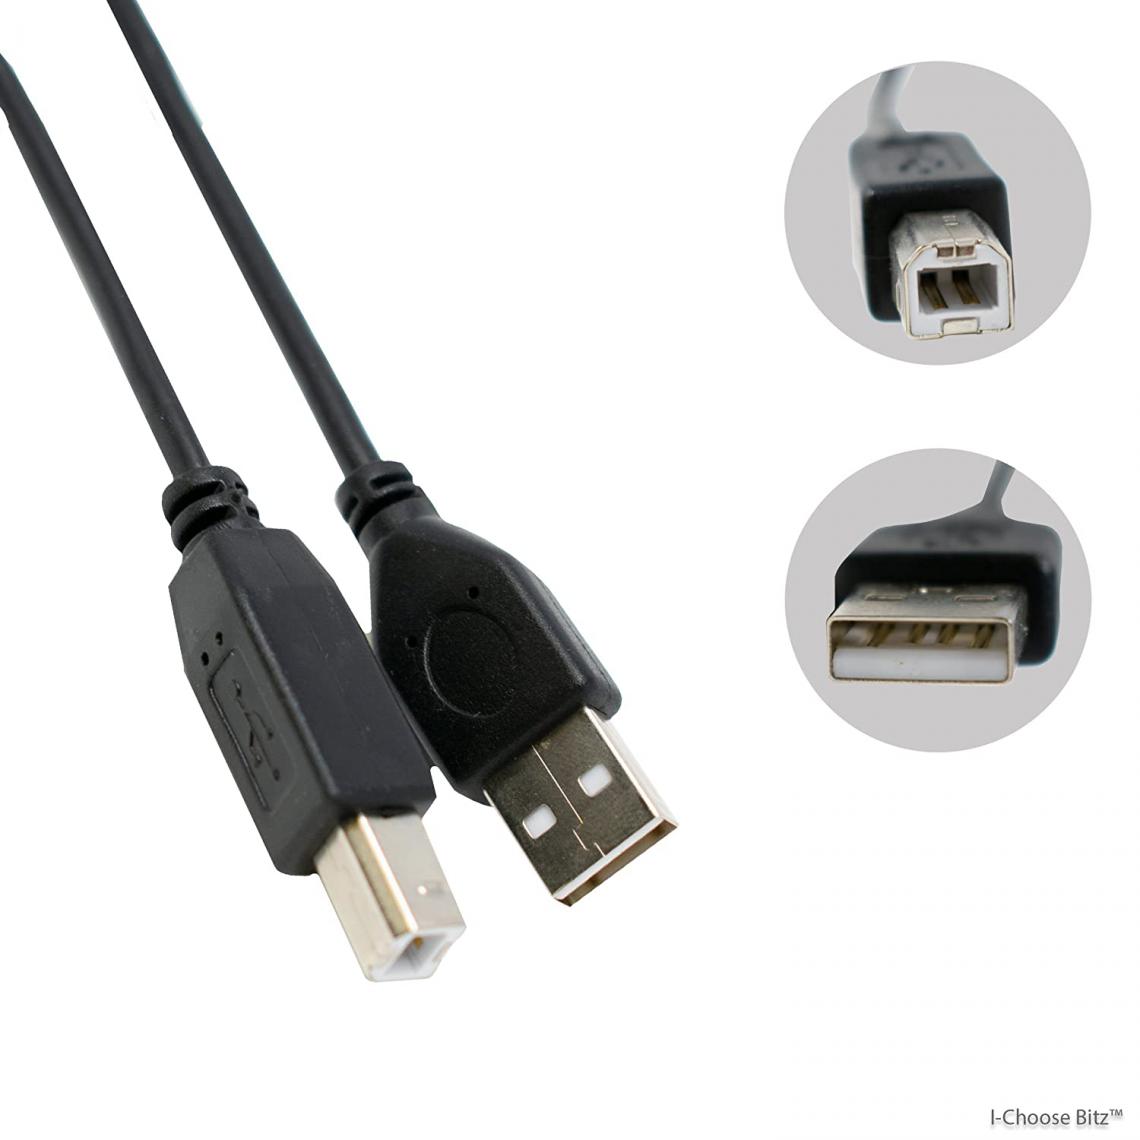 Ineck - INECK - 1,8M Cordon Noir USB A vers B 1.8 m pour imprimante et fax - Câble antenne